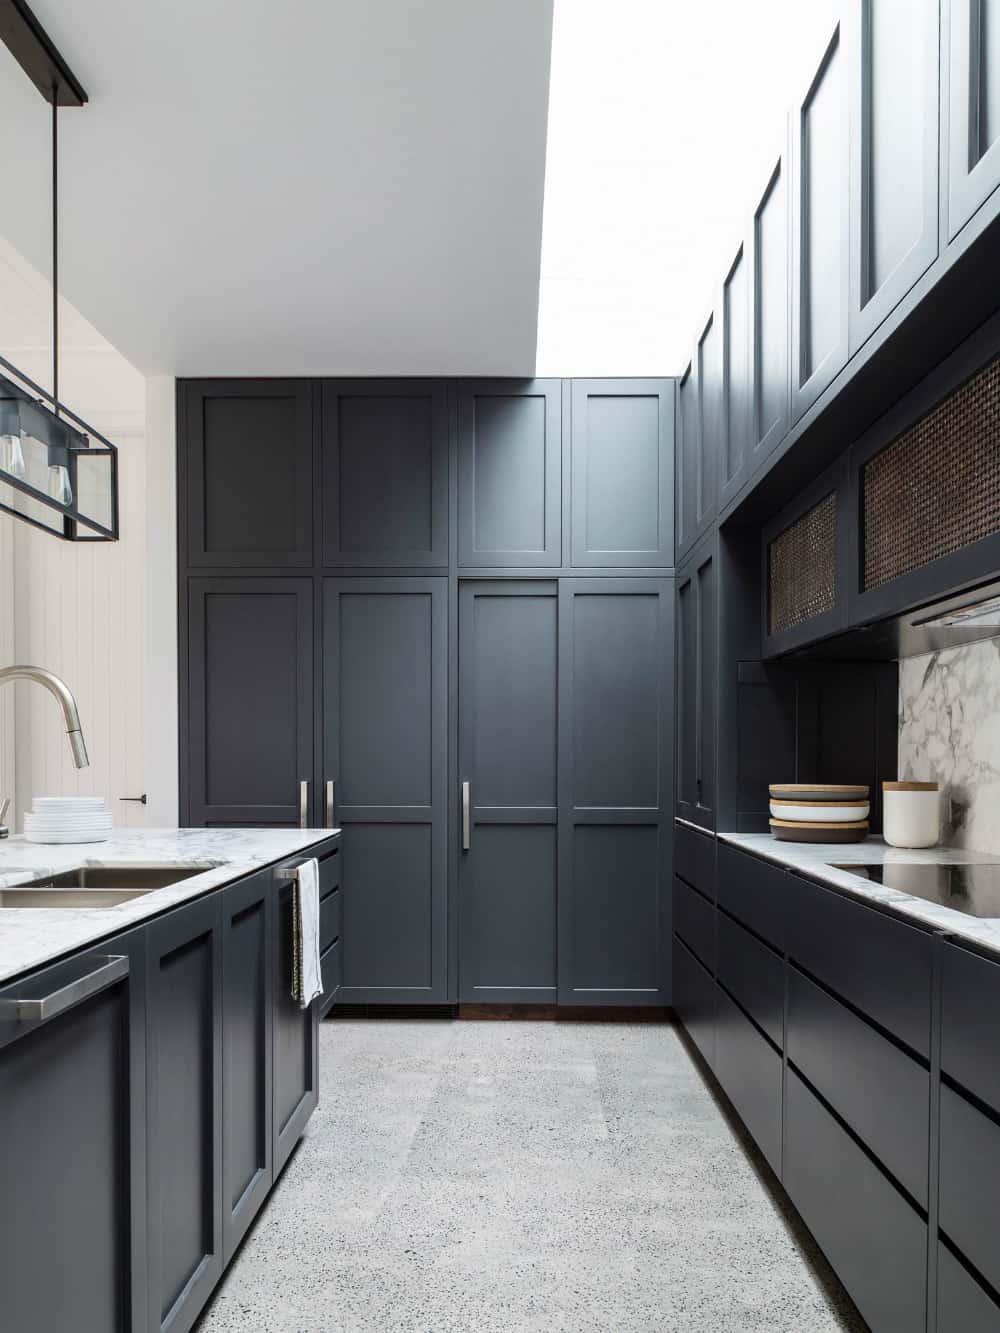 Modern minimalist kitchen cabinets